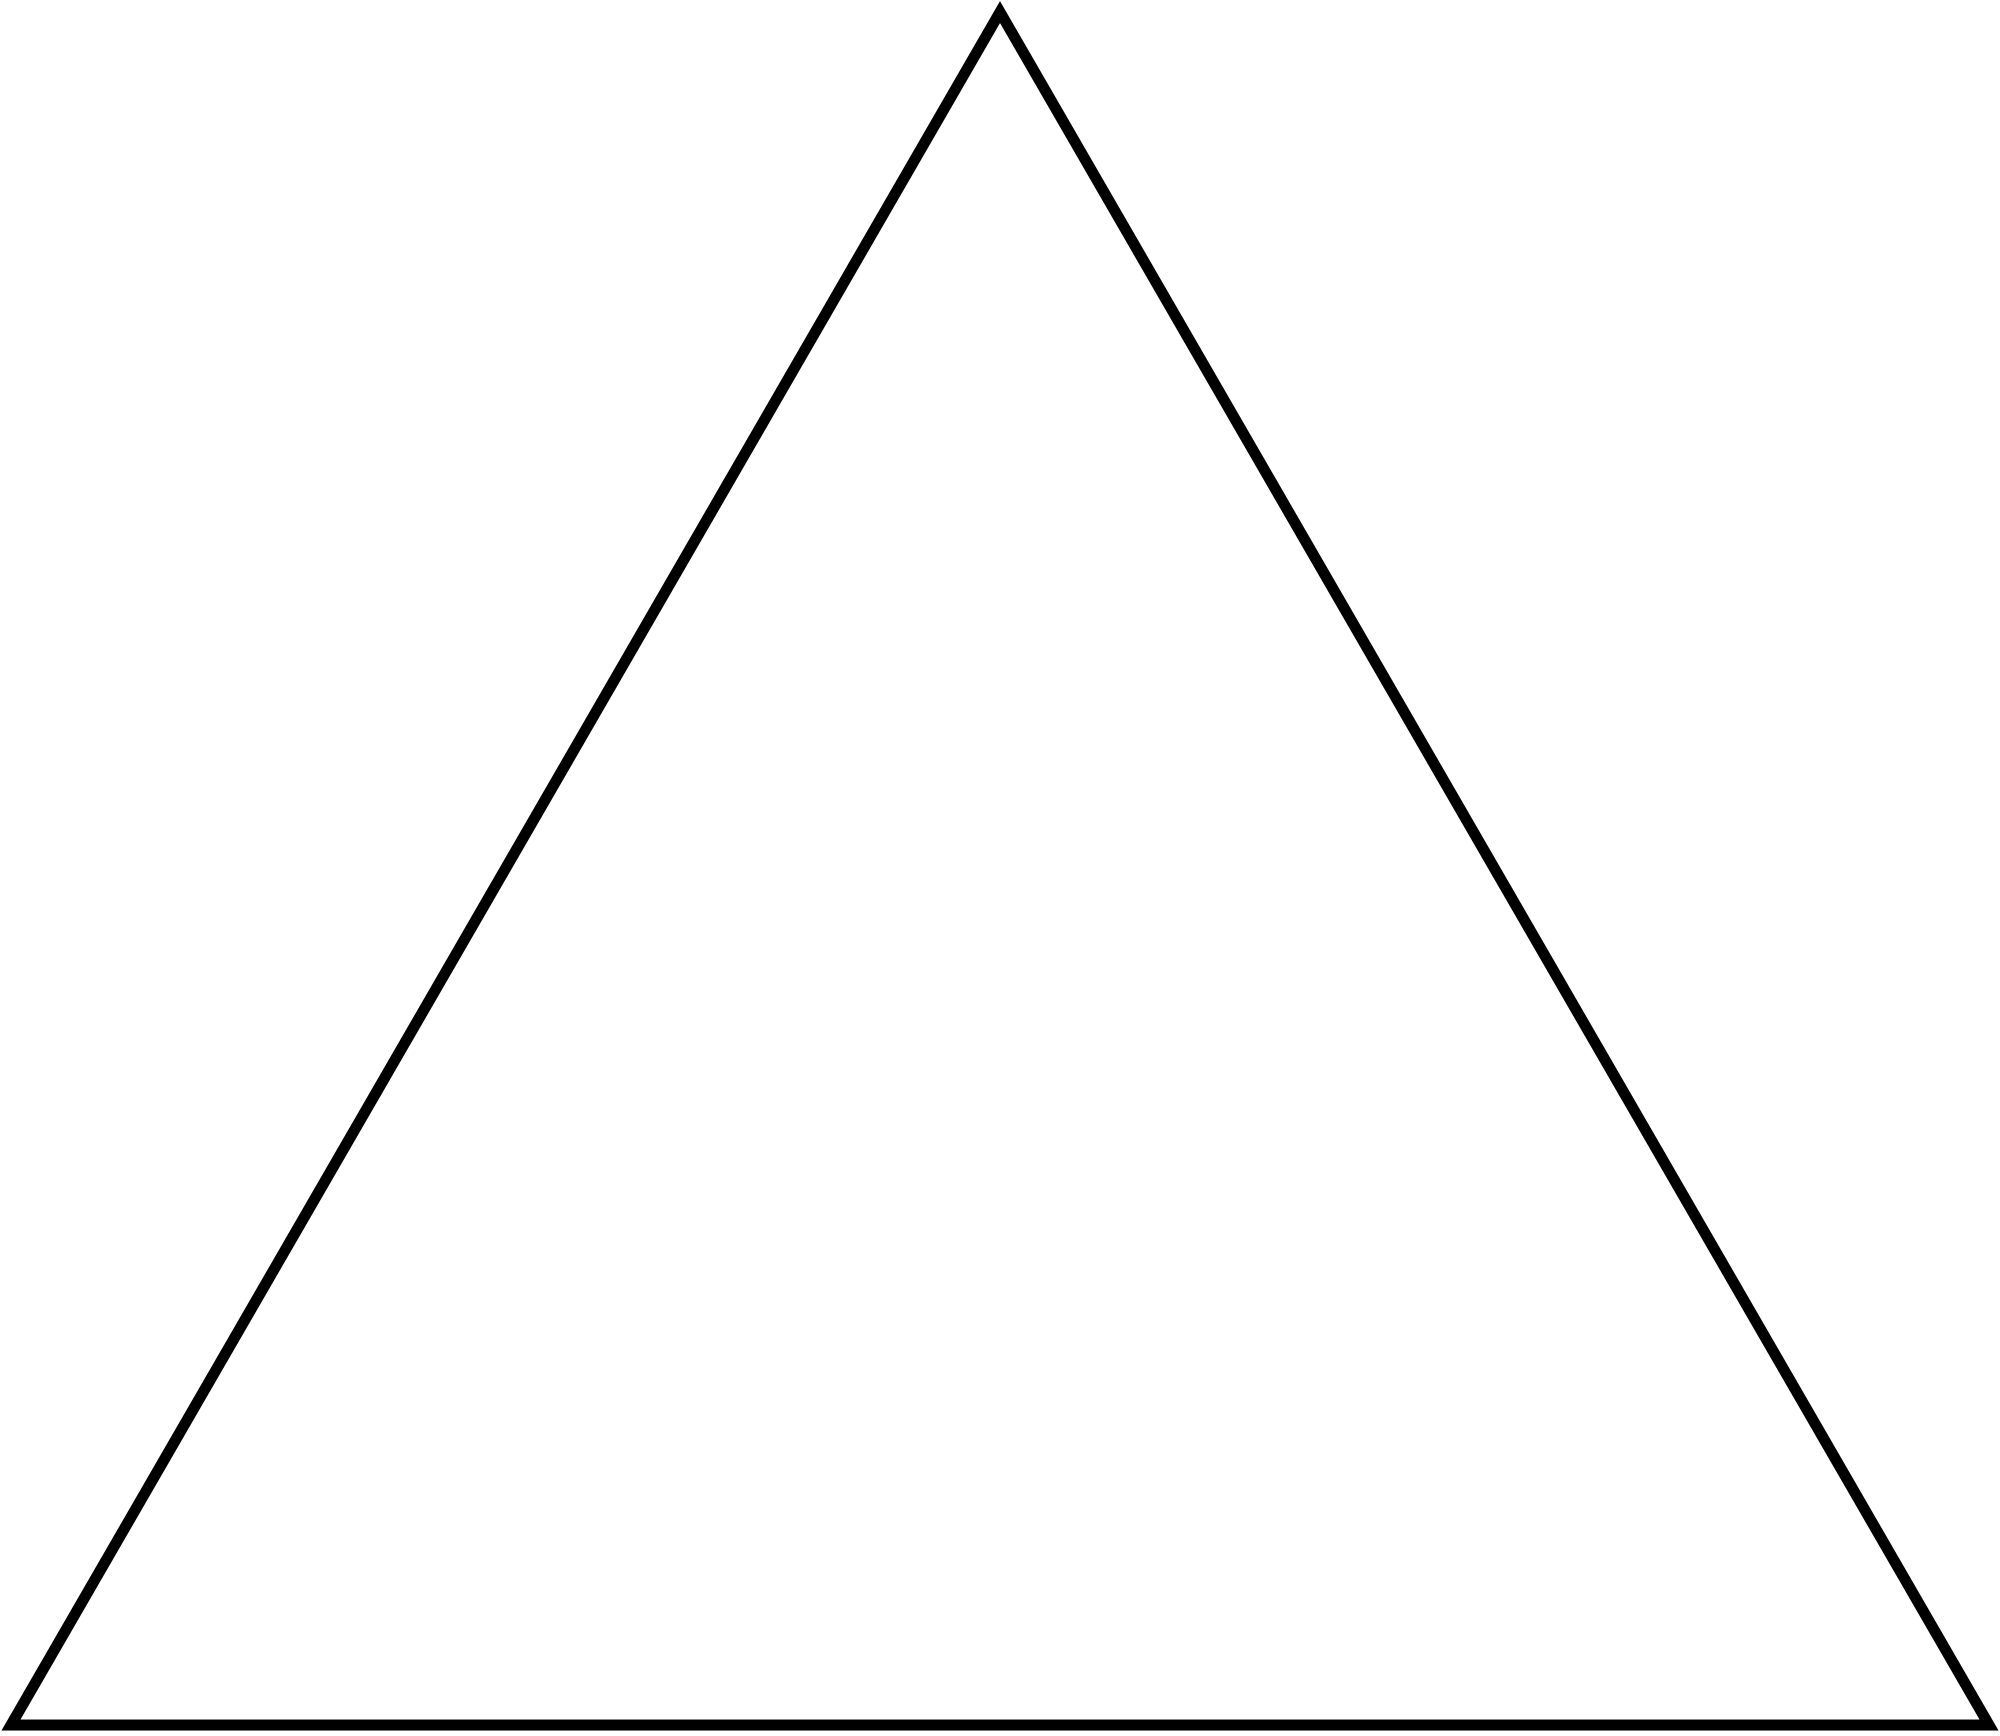 Imagen de PNG del símbolo del triángulo